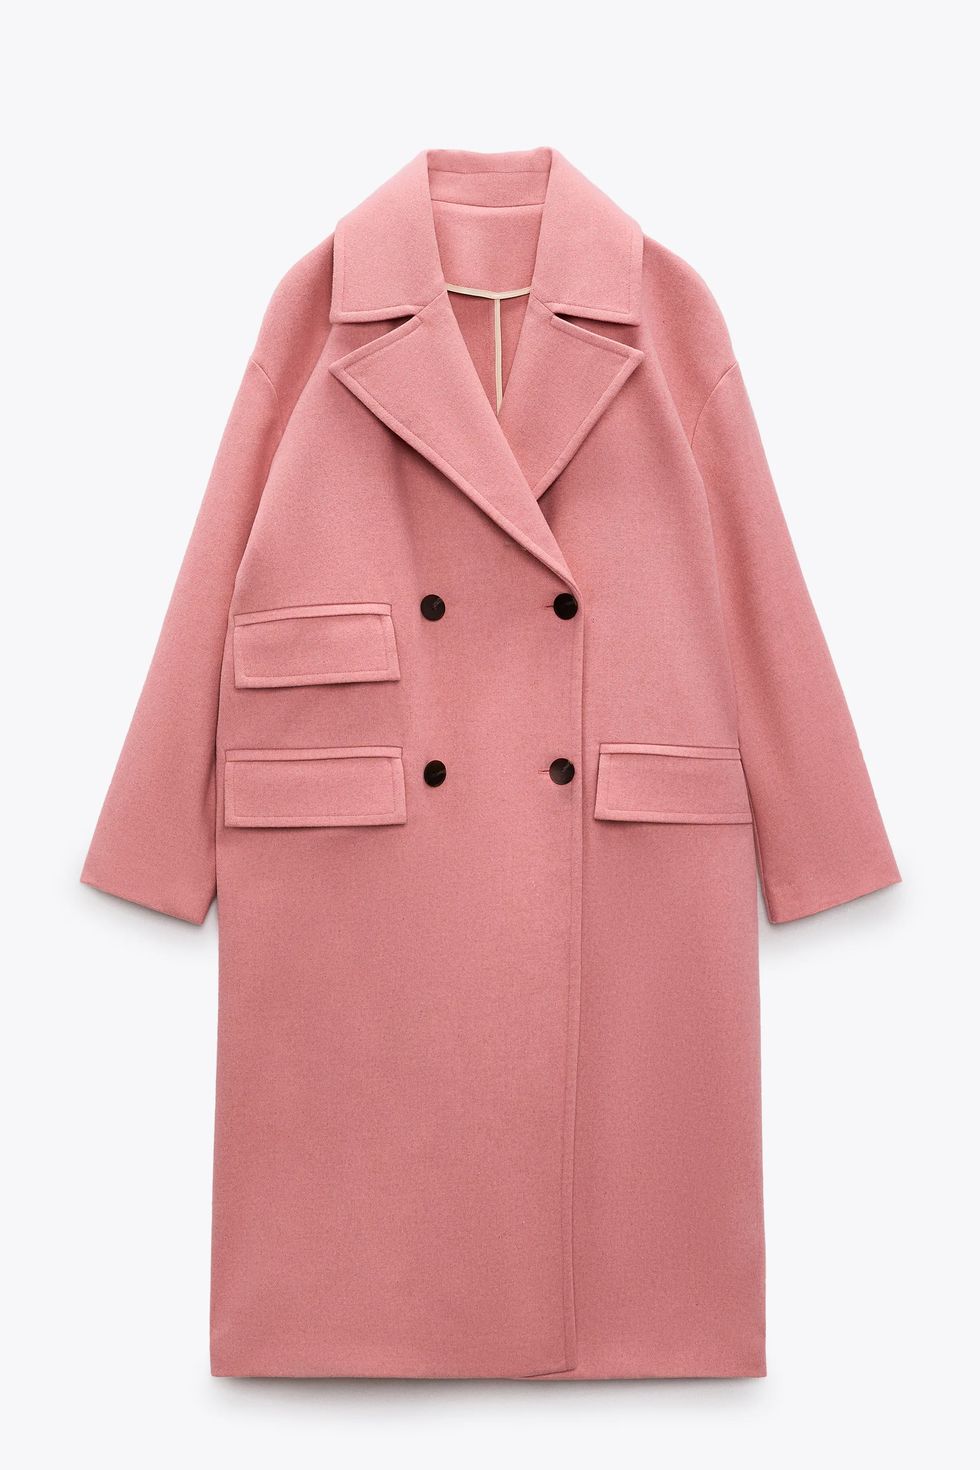 El abrigo rosa bonito de Zara